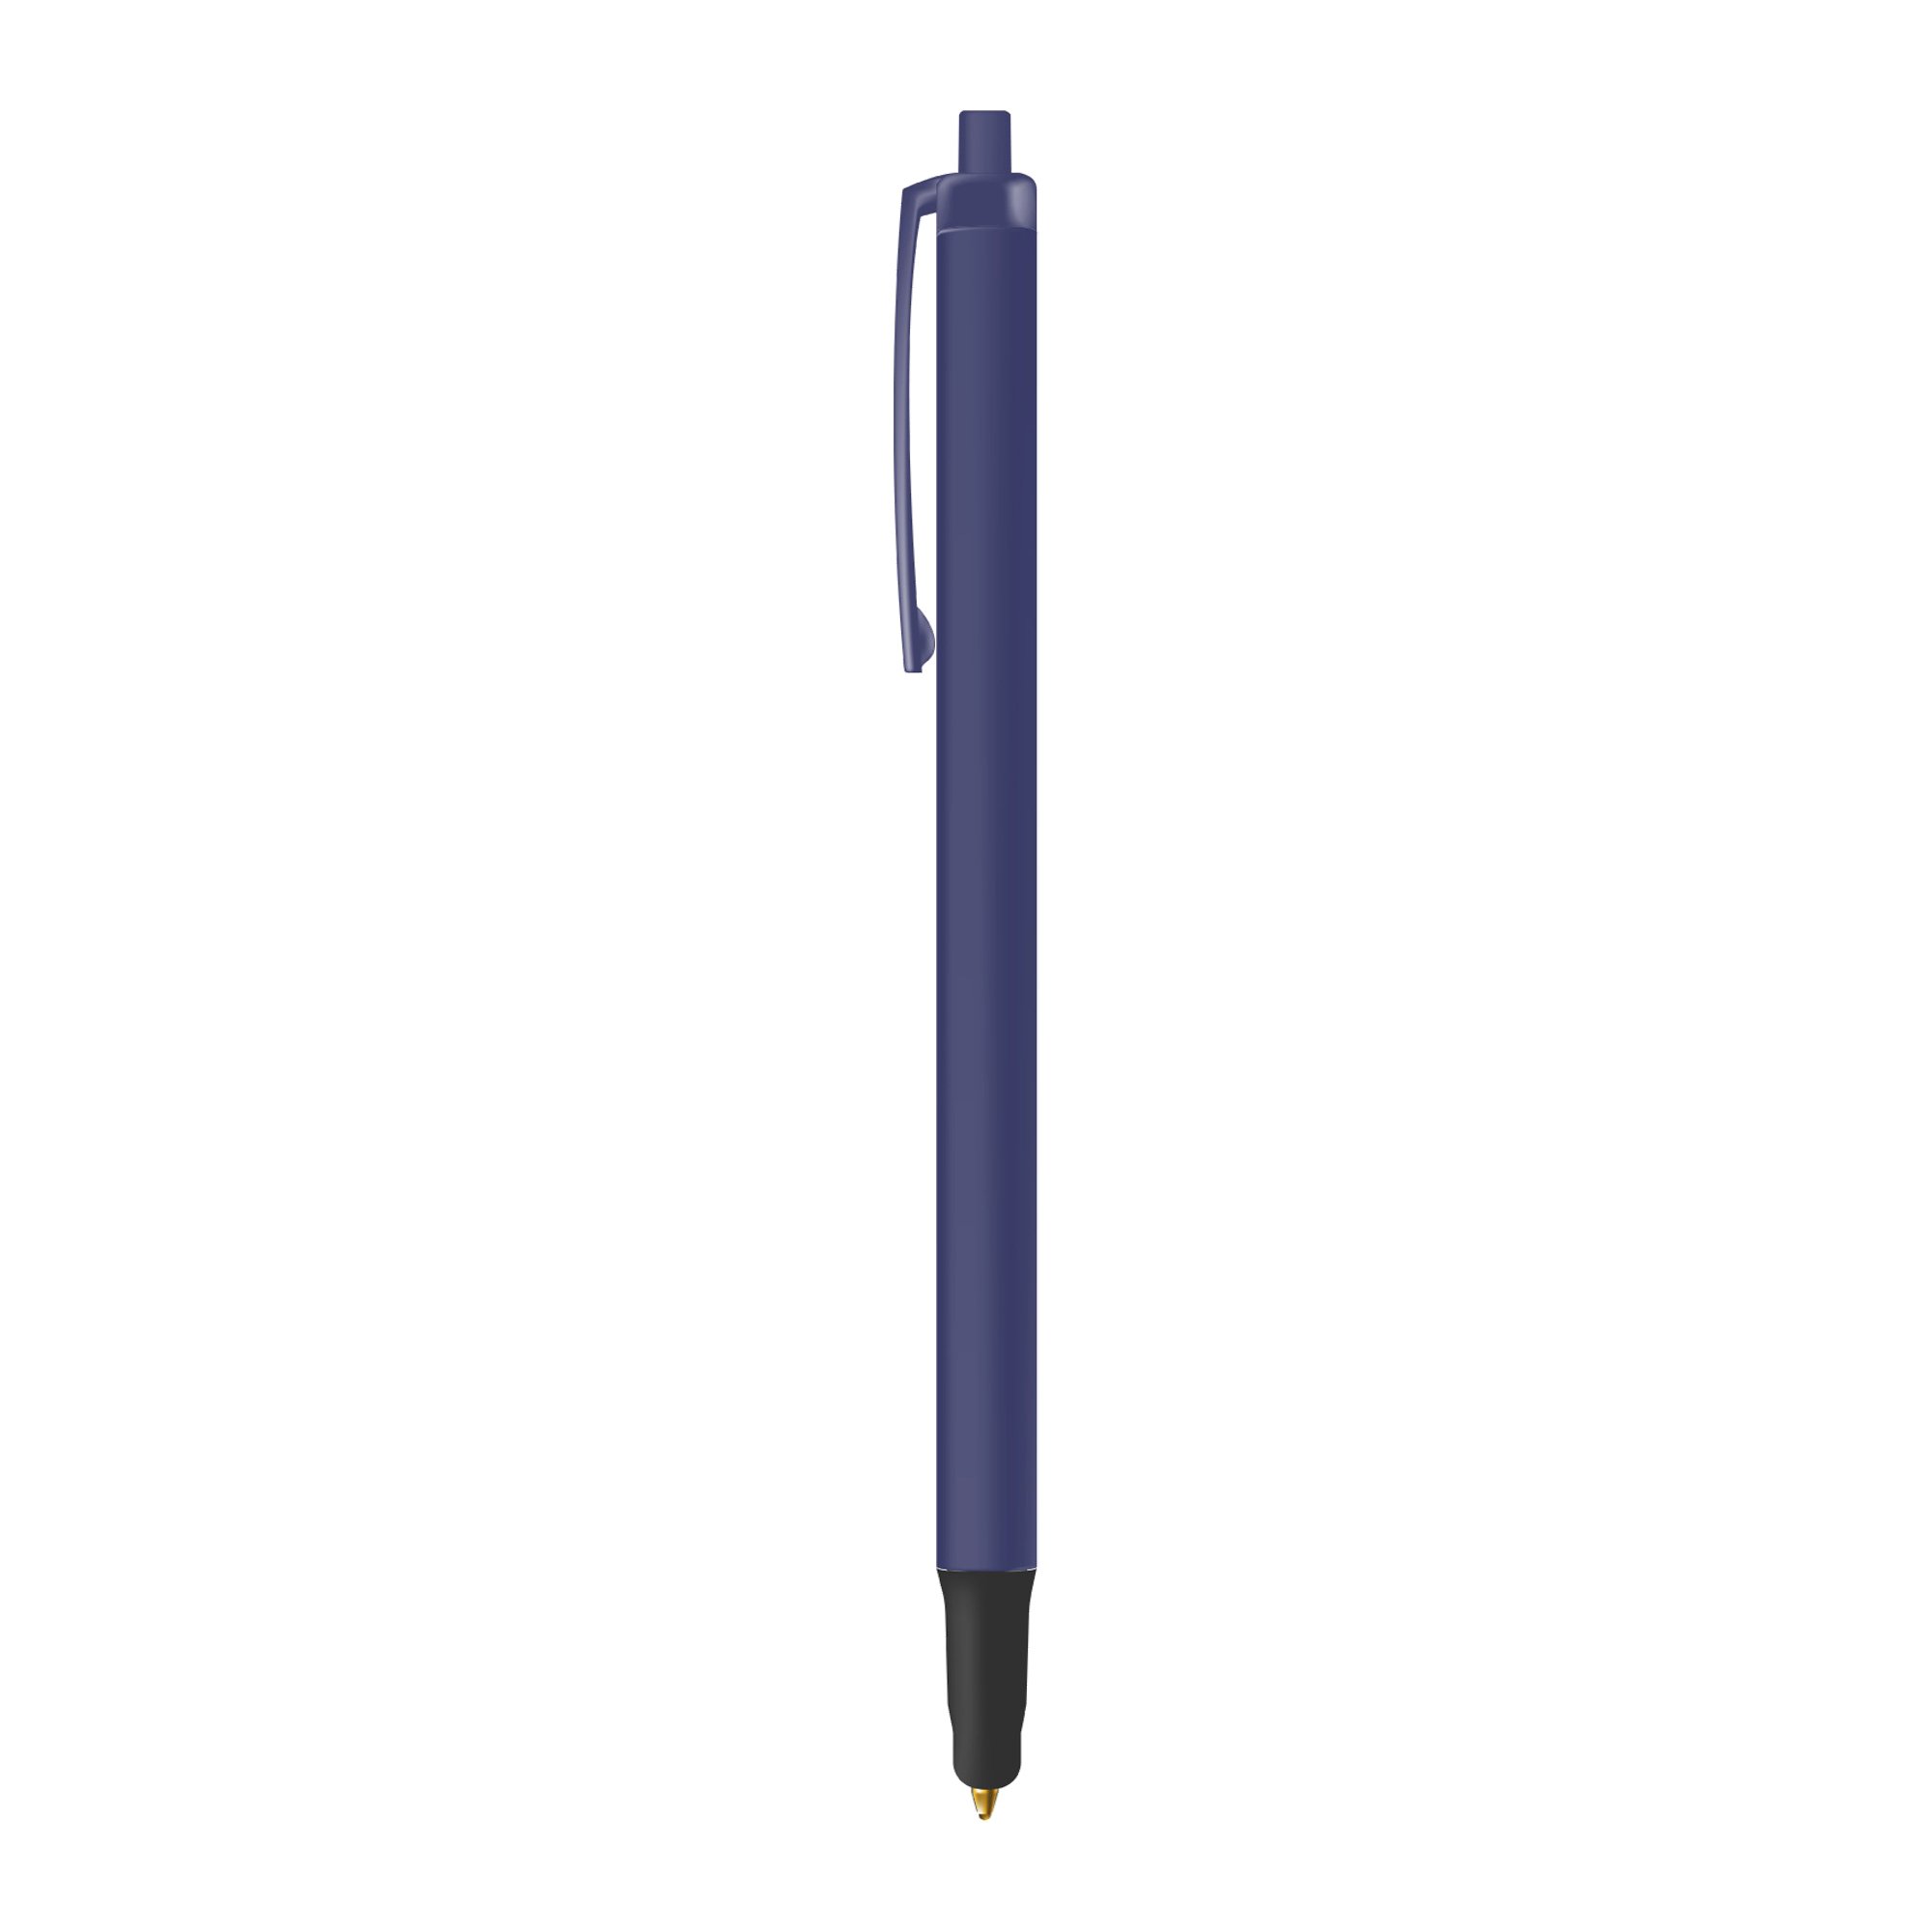 BIC Clic Stic Stylus ballpoint pen, blue ink